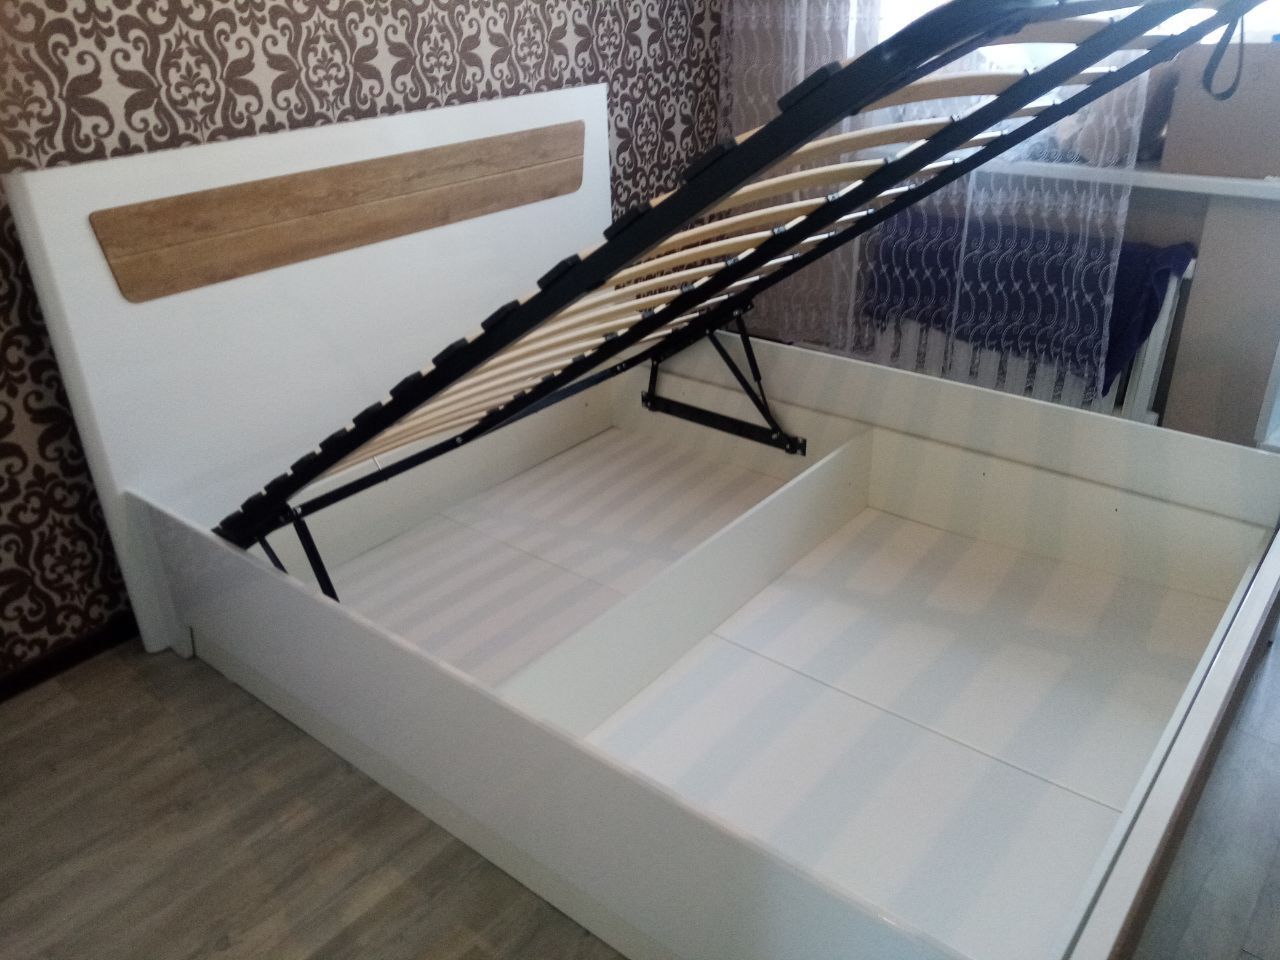 Двуспальная кровать "Бланка" 140 х 190 с подъемным механизмом